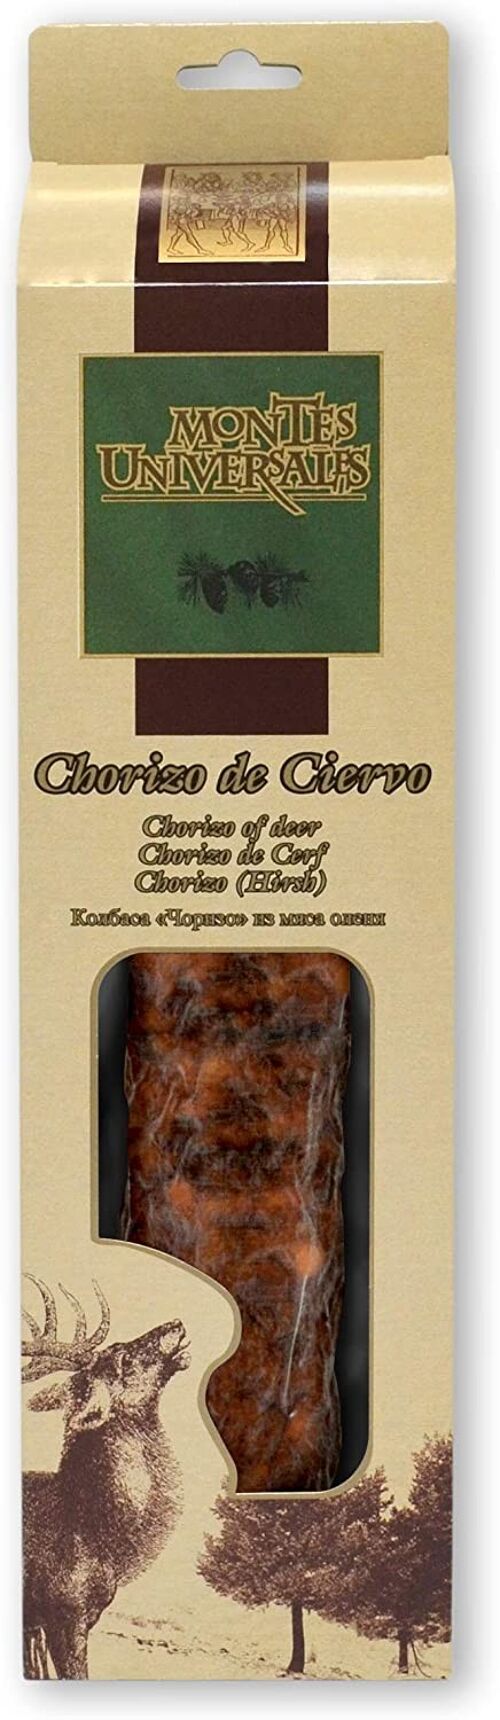 Chorizo Cular de Ciervo Estuchado Montes Universales (300g)